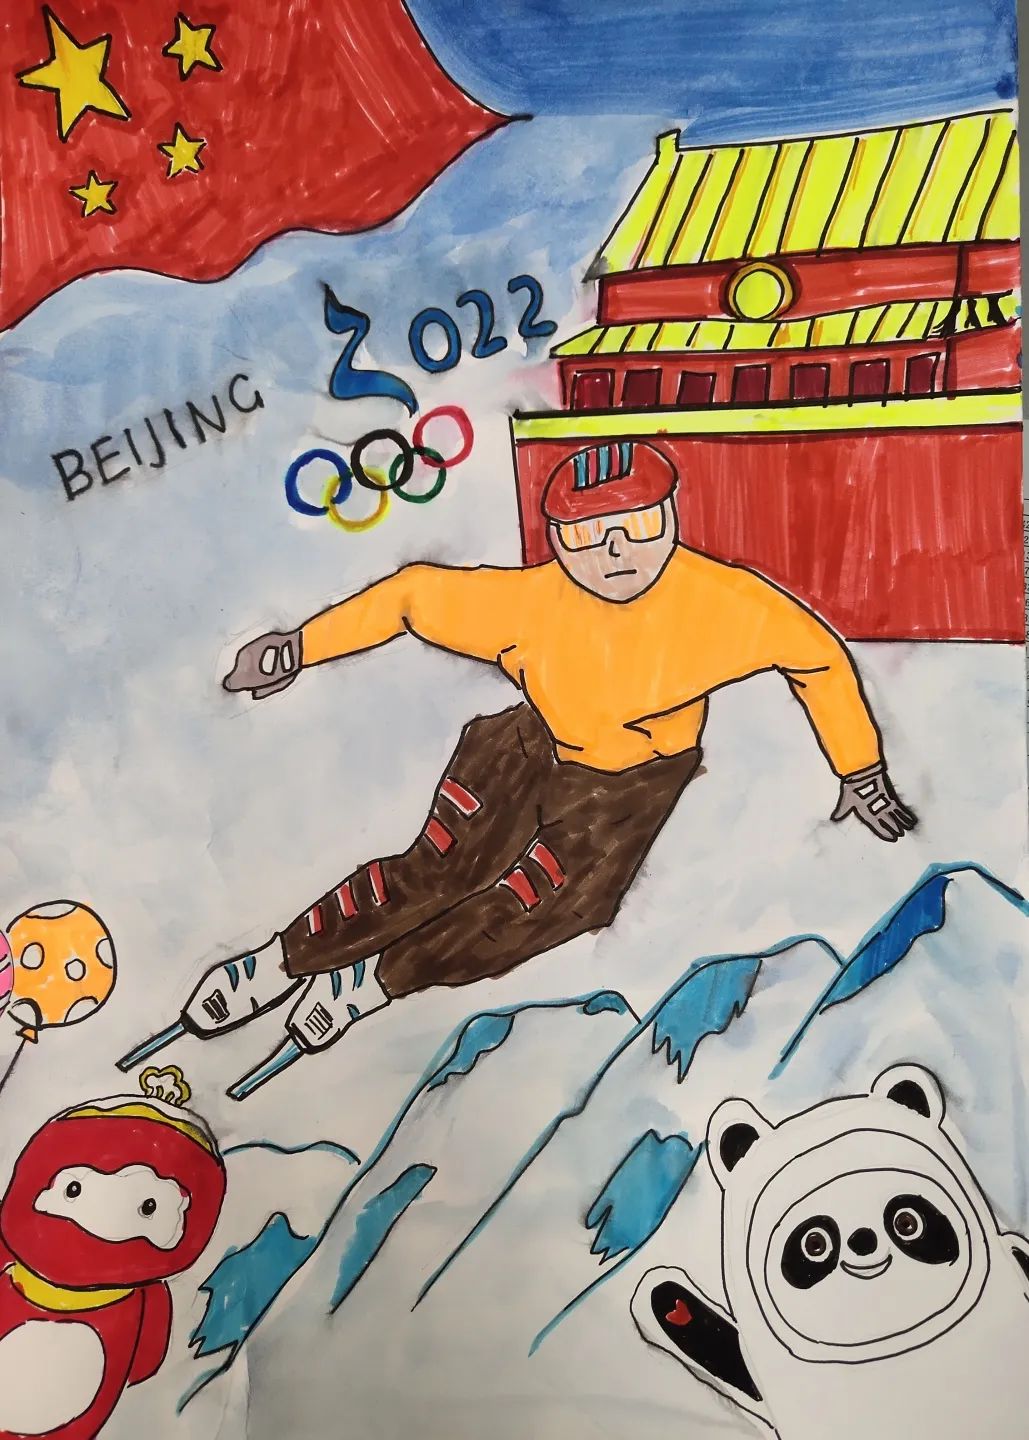 冬奥会运动健儿绘画图片